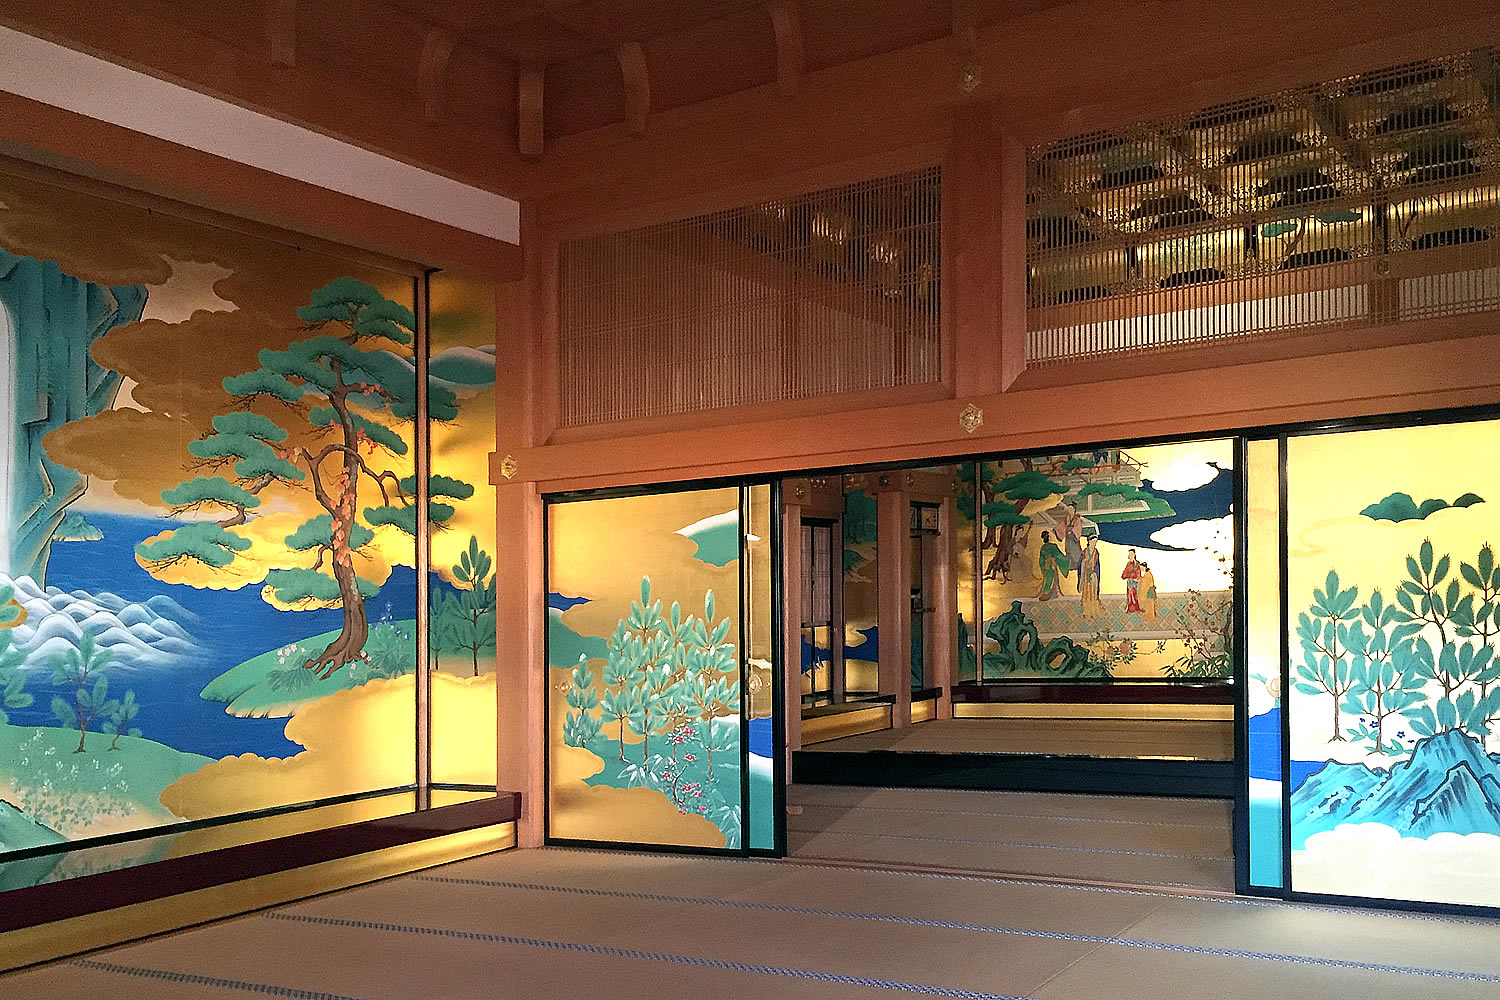 2016年熊本地震前に撮影した熊本城本殿の内装